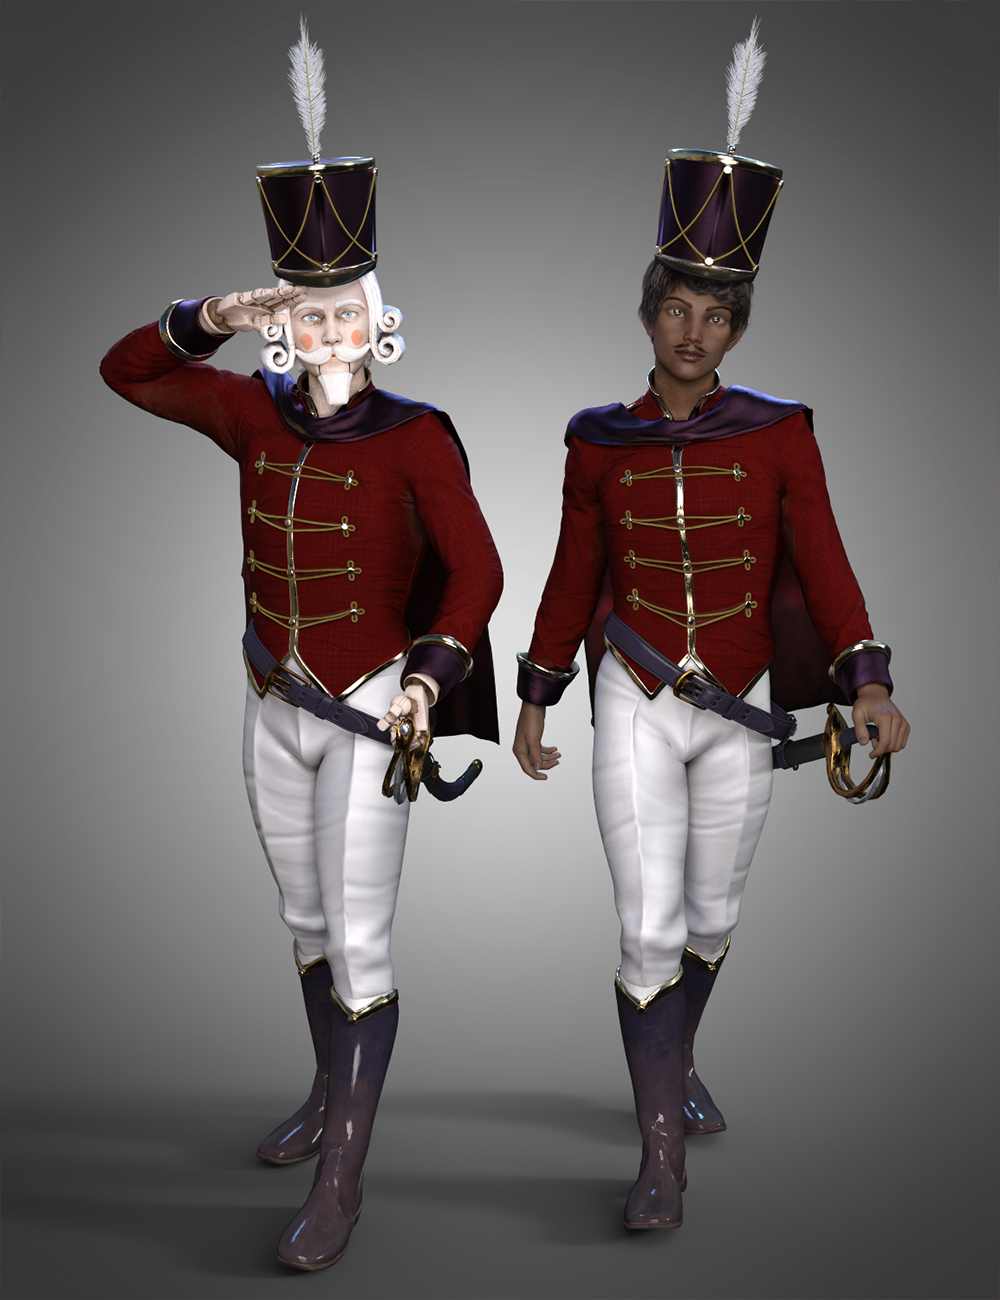 Nutcracker Uniform for Genesis 8.1 Males by: JoeQuick, 3D Models by Daz 3D